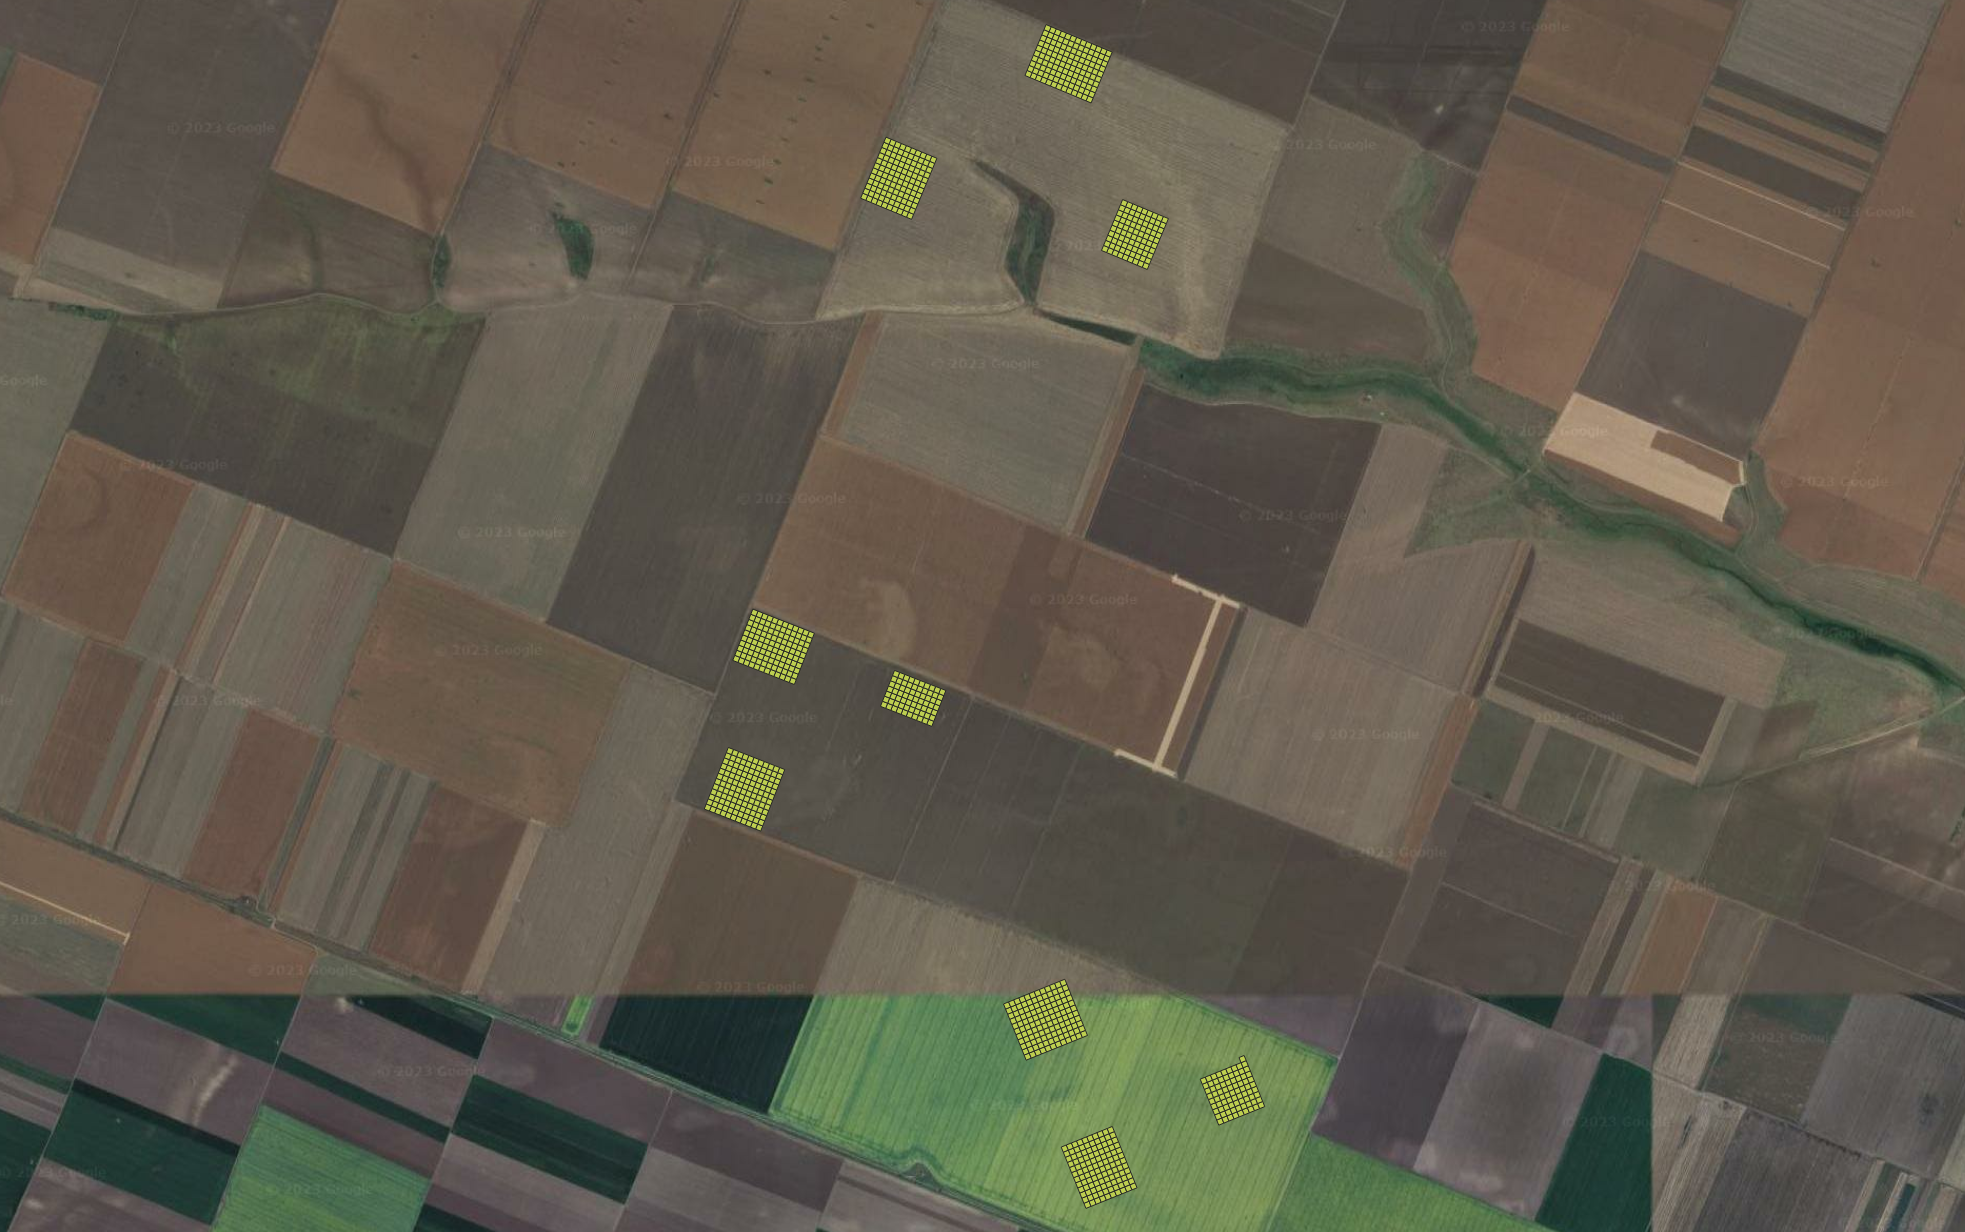 Soil Sampling grid in the Romanian fields.